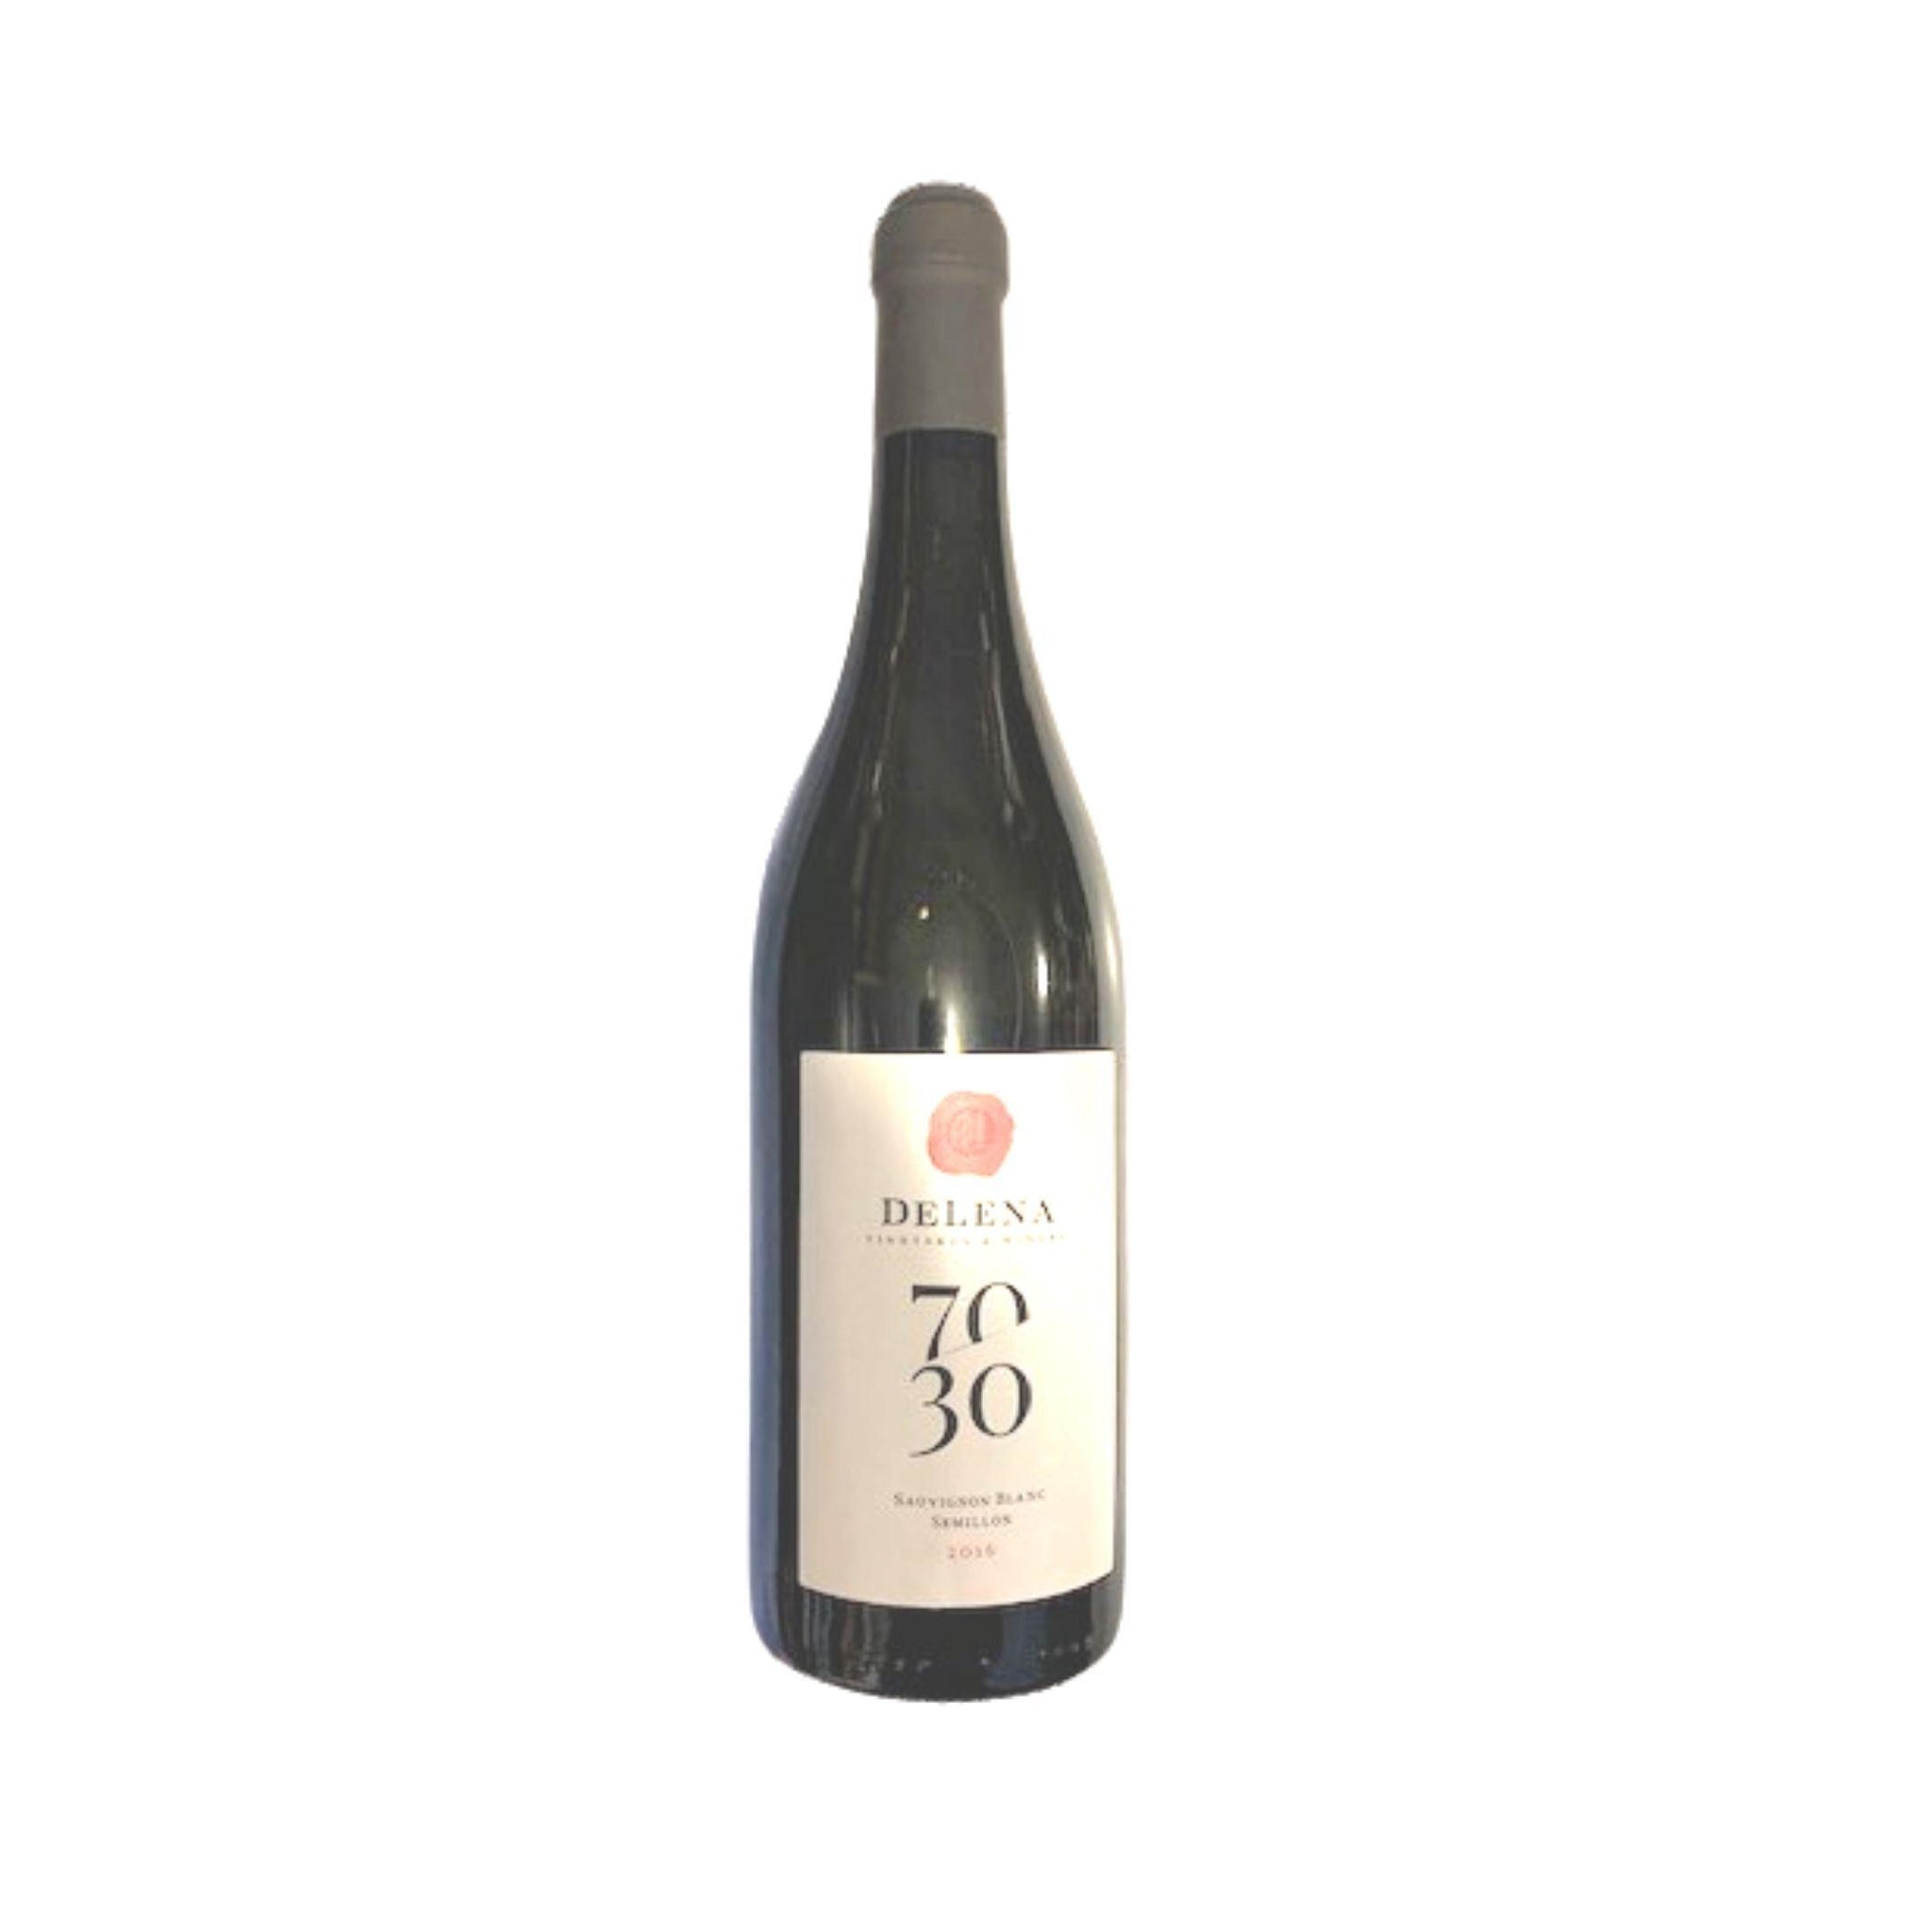 DeLena 70/30 Sauvignon Blanc Semillon 2016 750